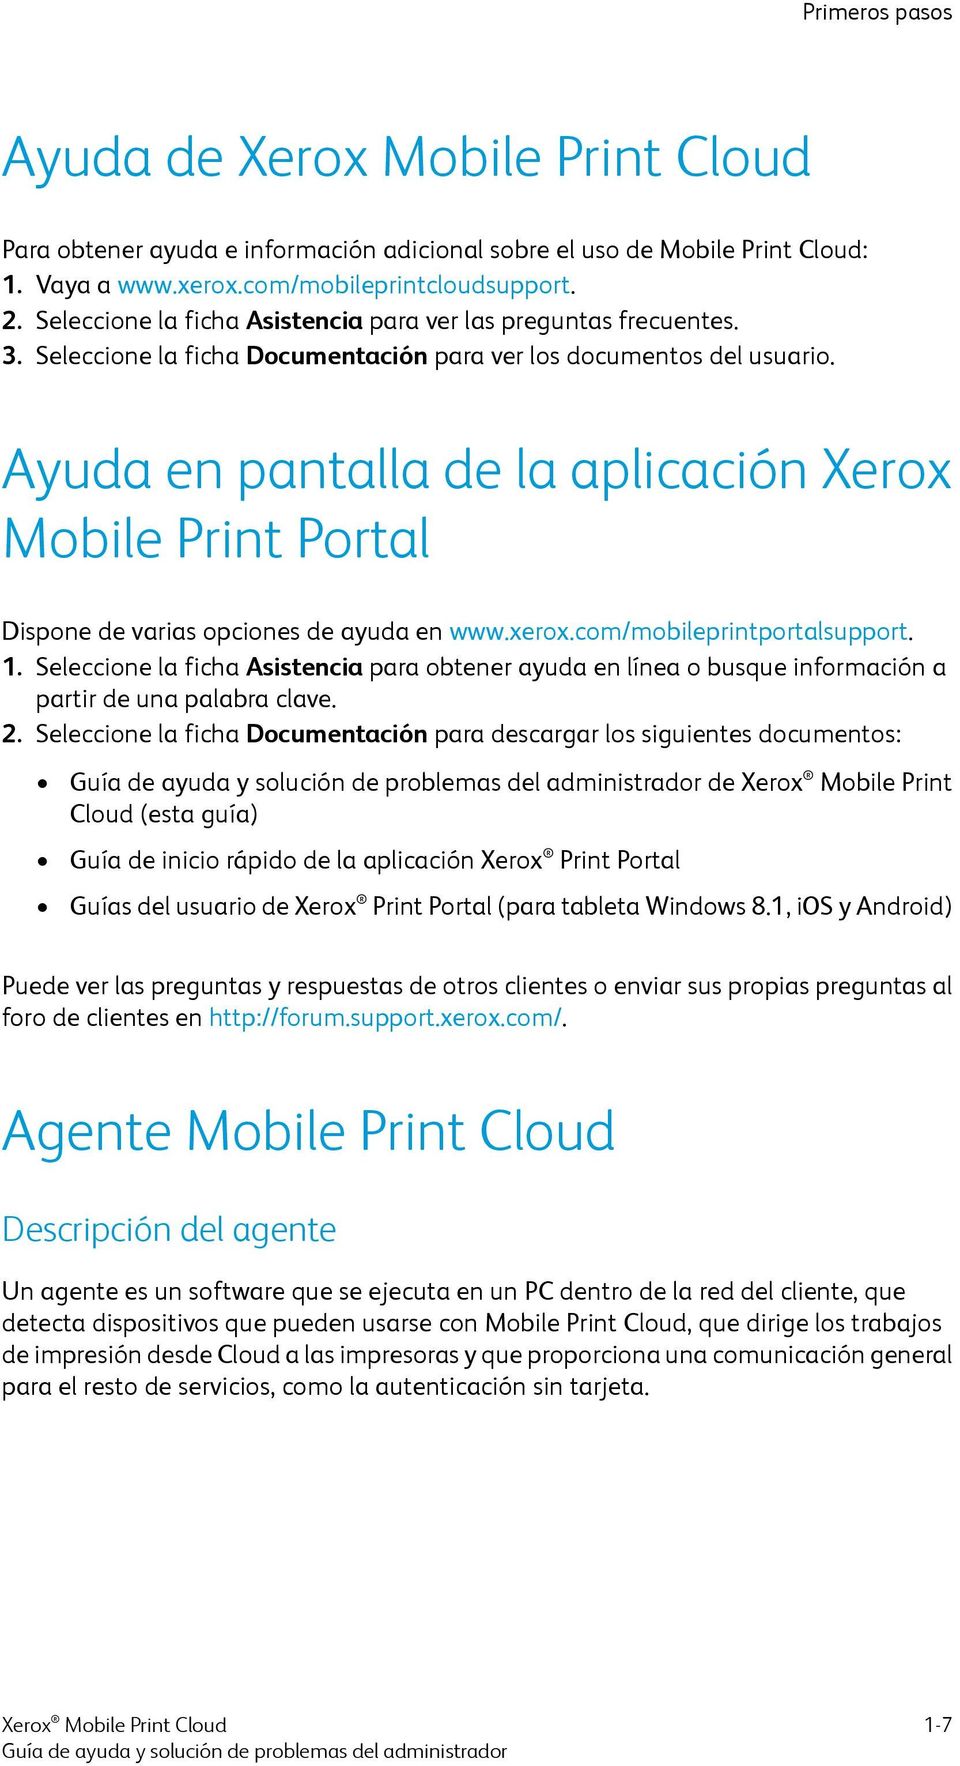 Ayuda en pantalla de la aplicación Xerox Mobile Print Portal Dispone de varias opciones de ayuda en www.xerox.com/mobileprintportalsupport. 1.